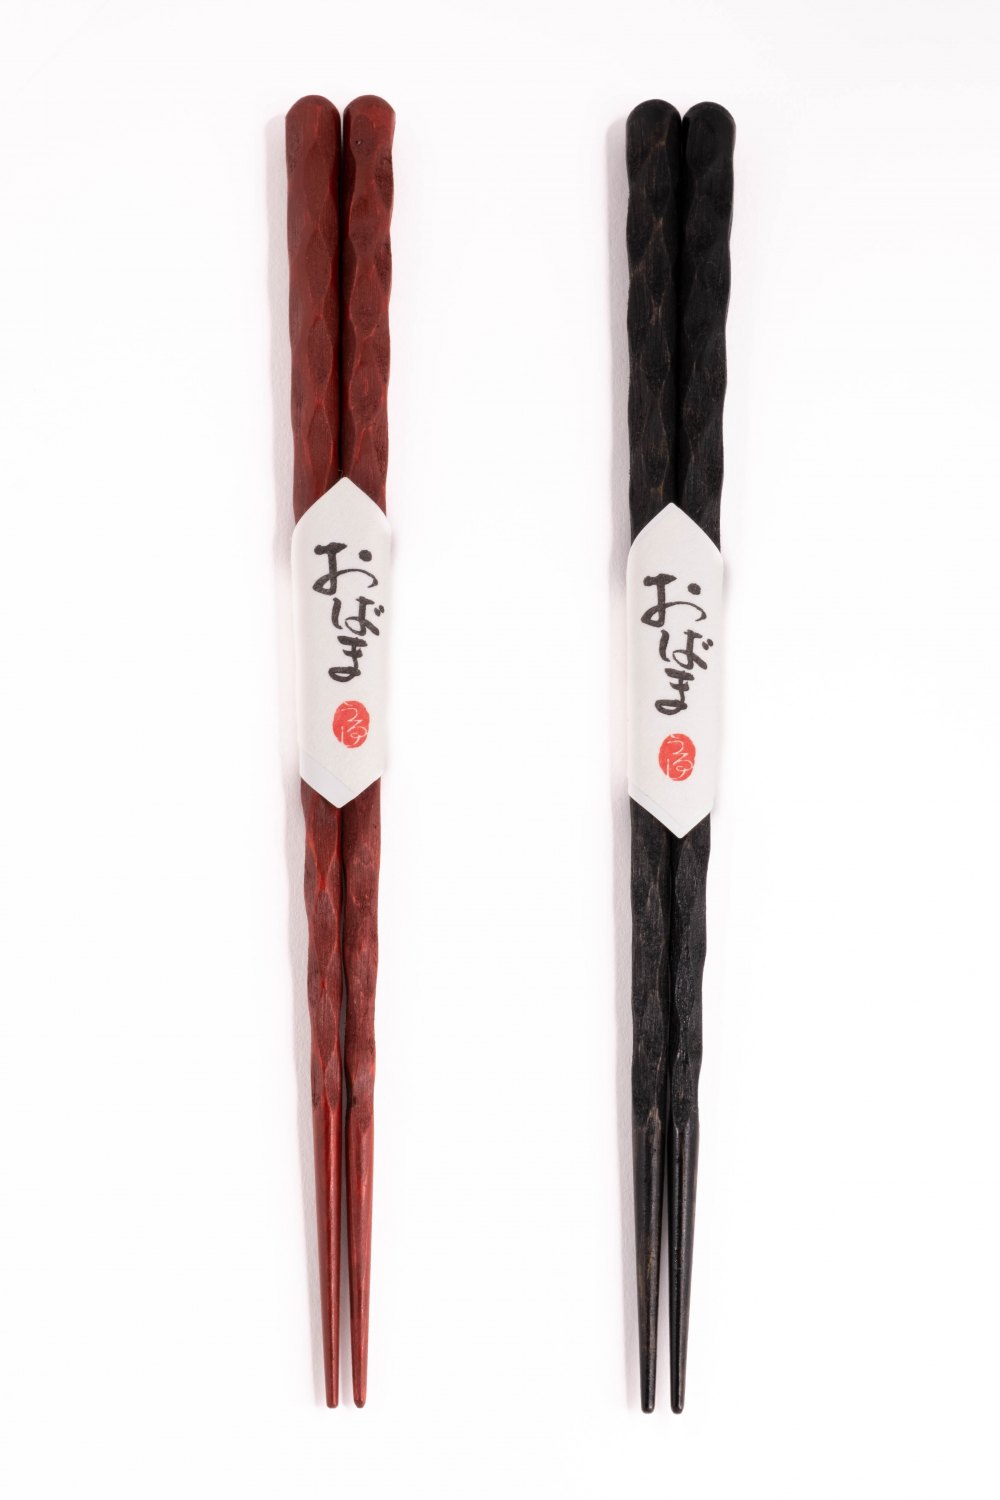 Carved black chopsticks